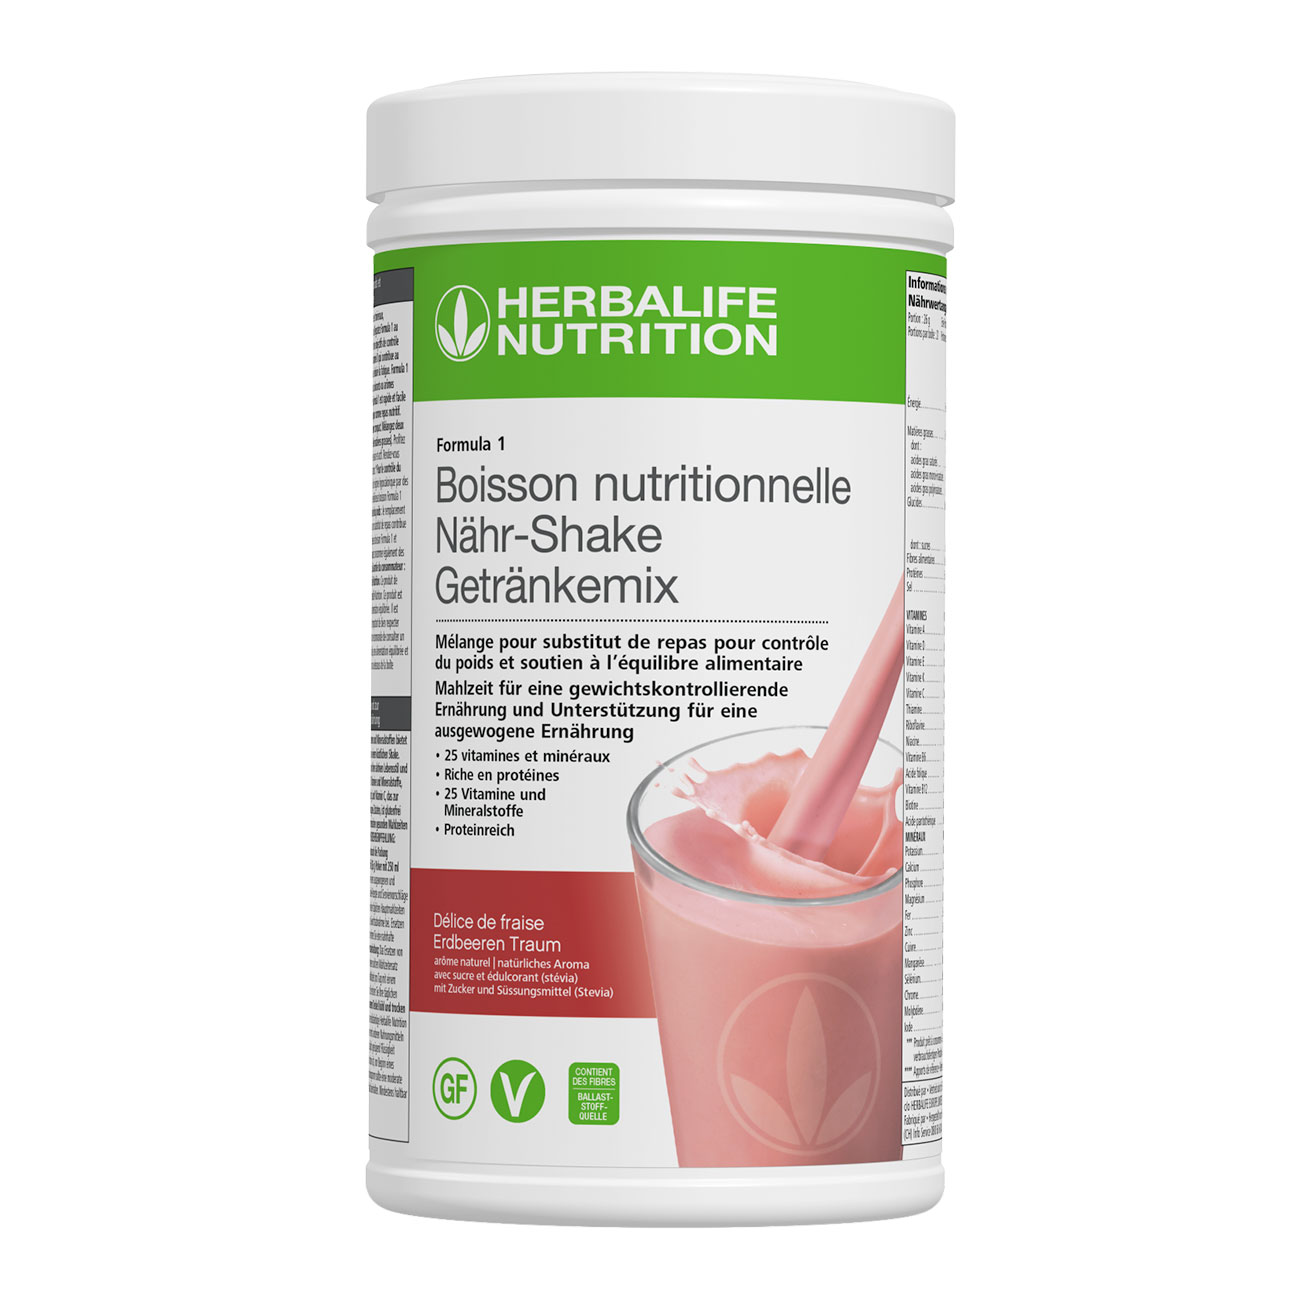 Formula 1 Delice de fraise  – un delicieux shake riche en proteines. Ingredients vegan et sans-gluten. Un repas complet.